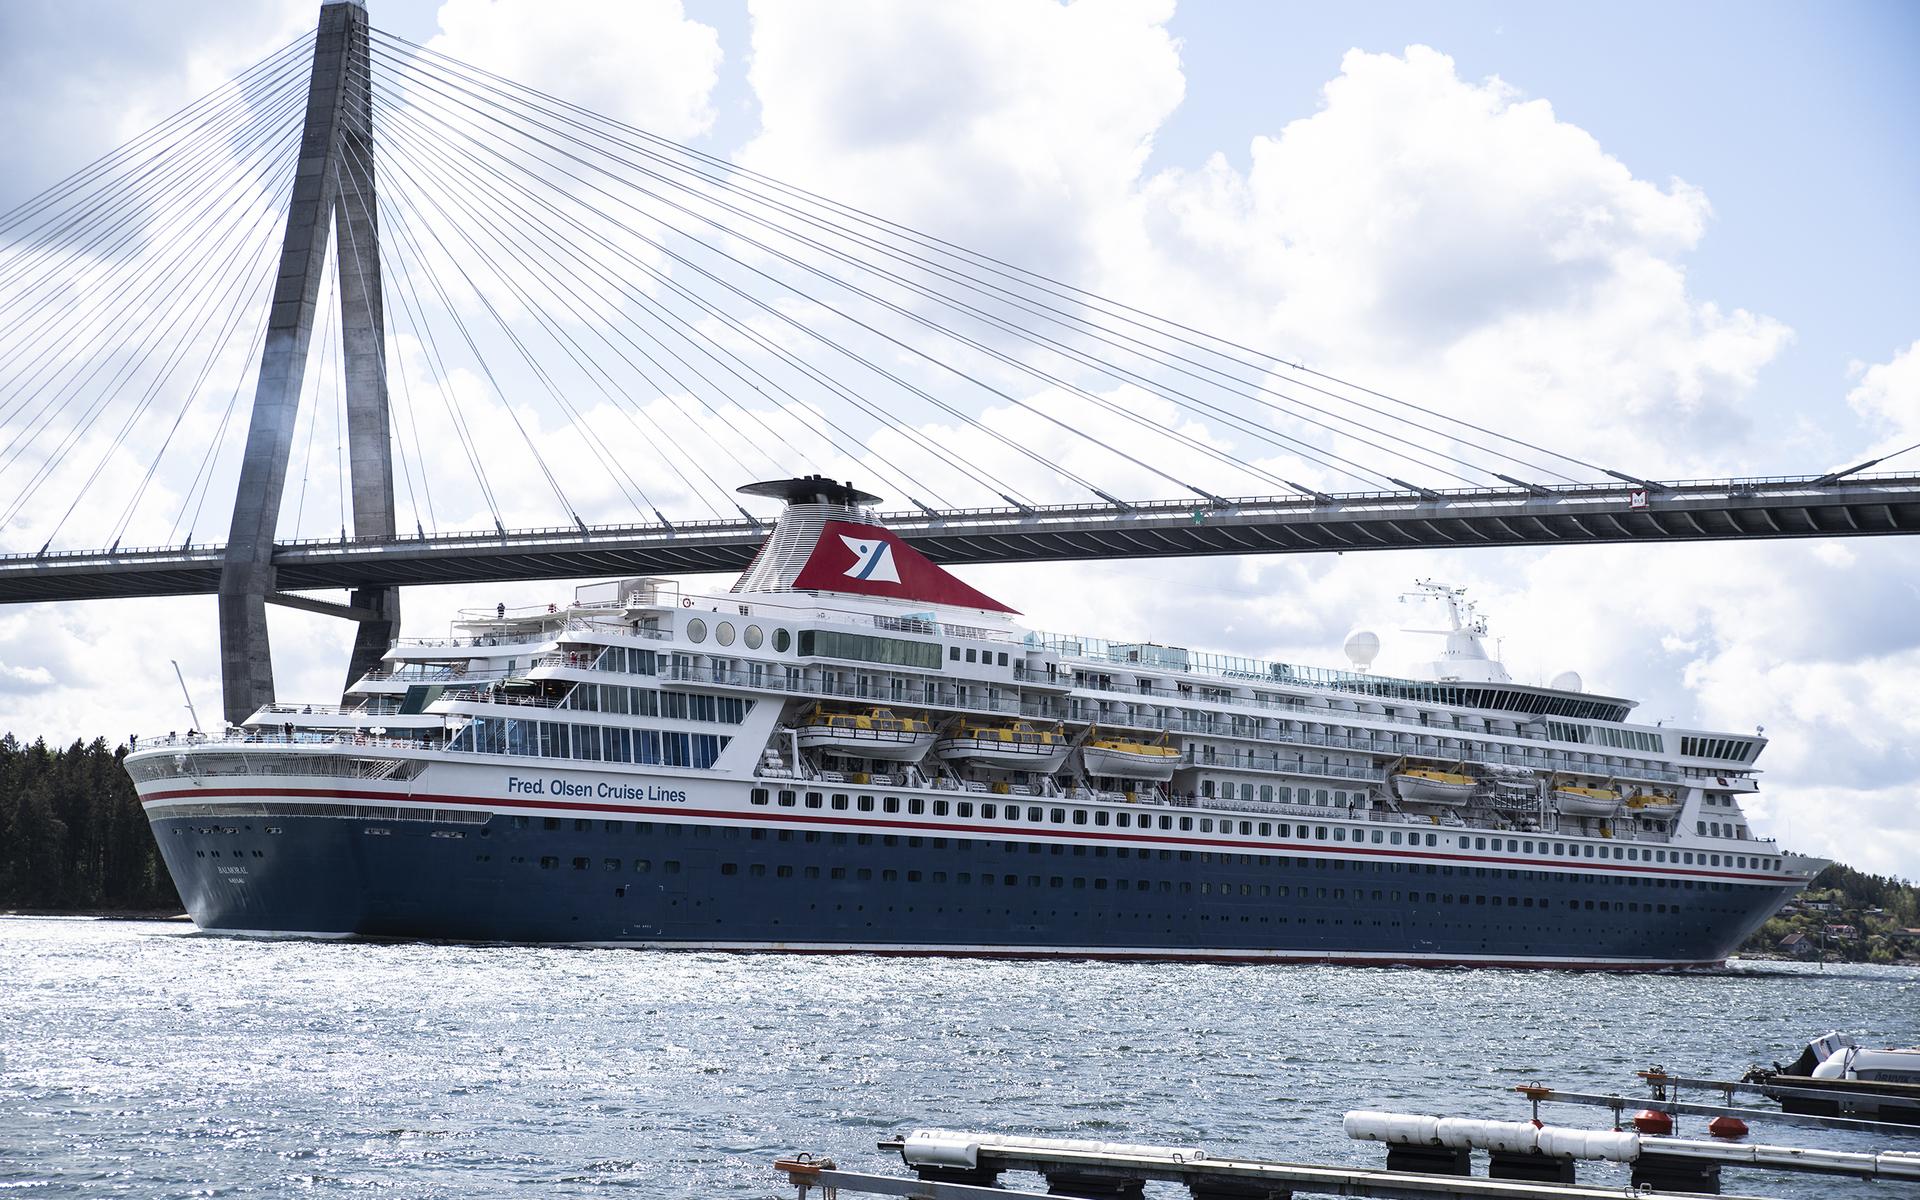 Balmoral tillhör rederiet Fred Olsen Cruise Lines.